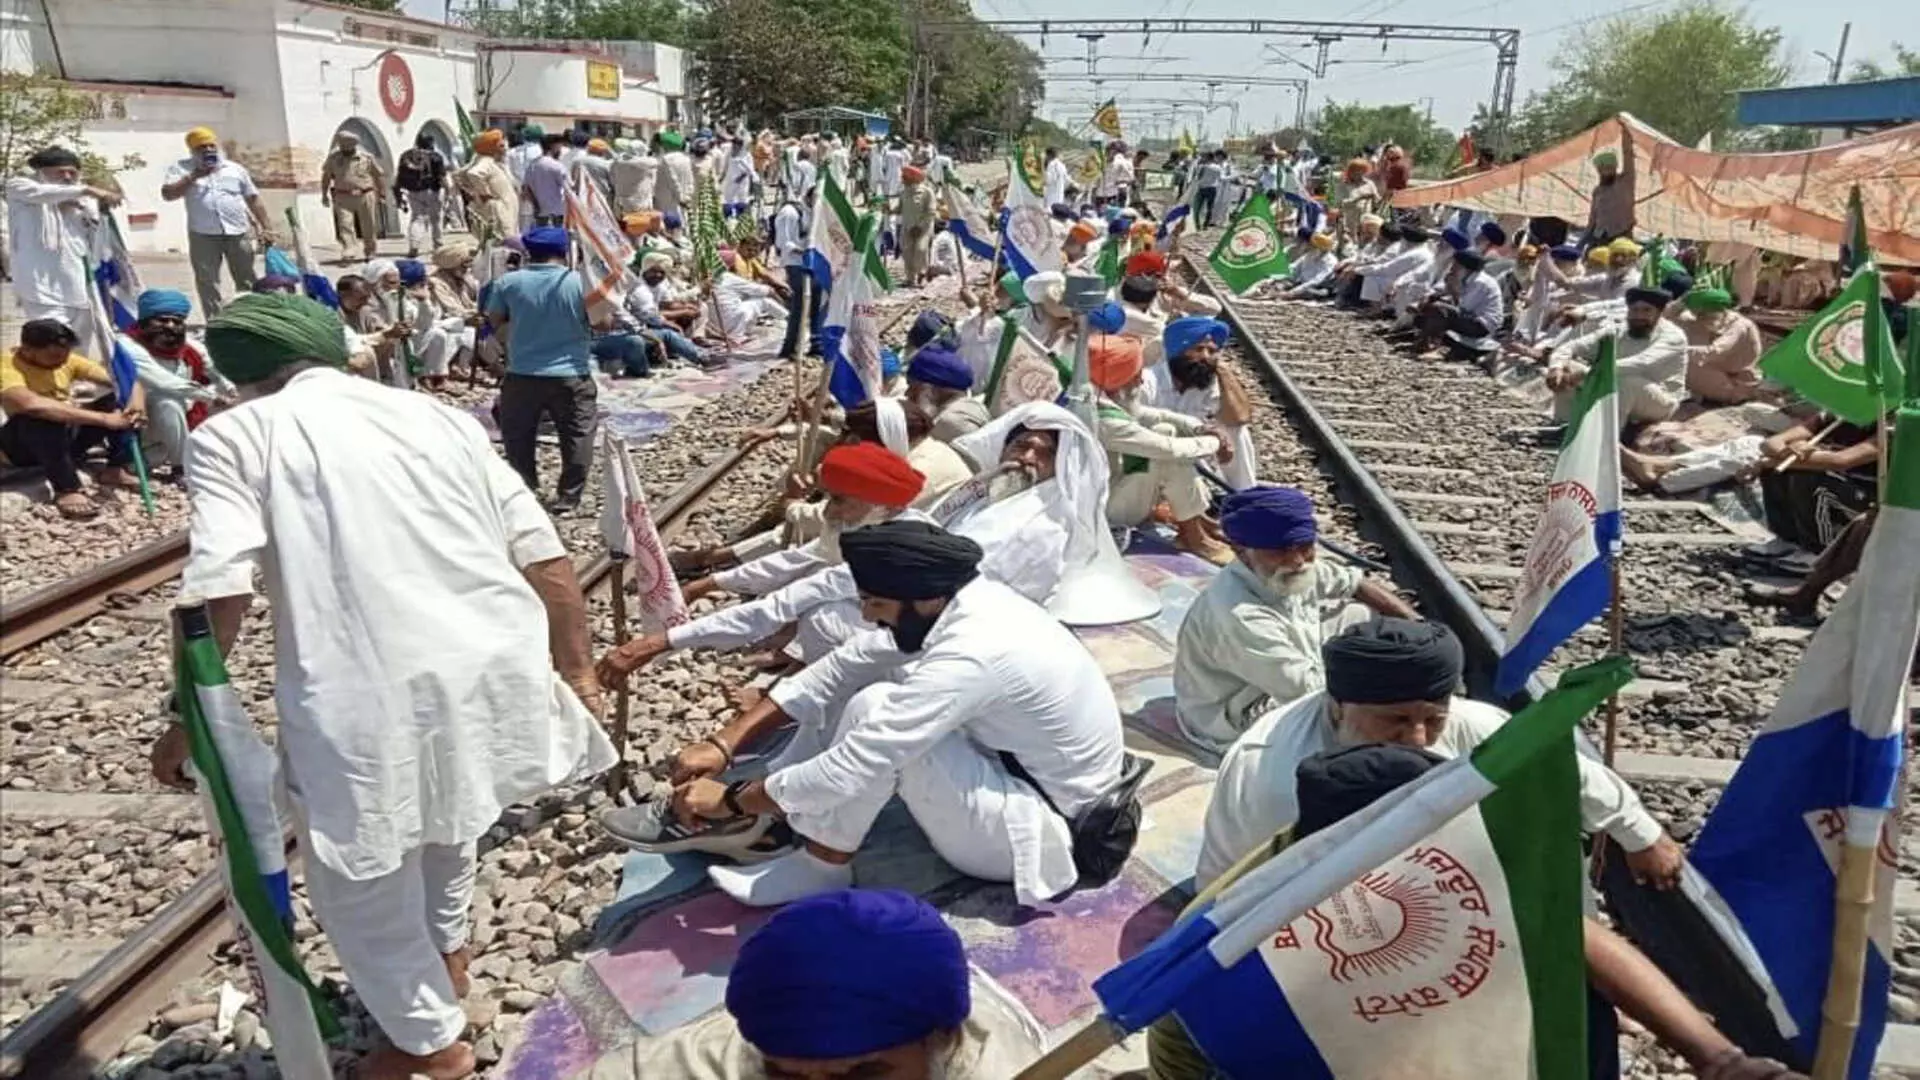 3 साथी प्रदर्शनकारियों की रिहाई की मांग को लेकर किसान शंभू बॉर्डर पर रेलवे ट्रैक पर बैठ गए